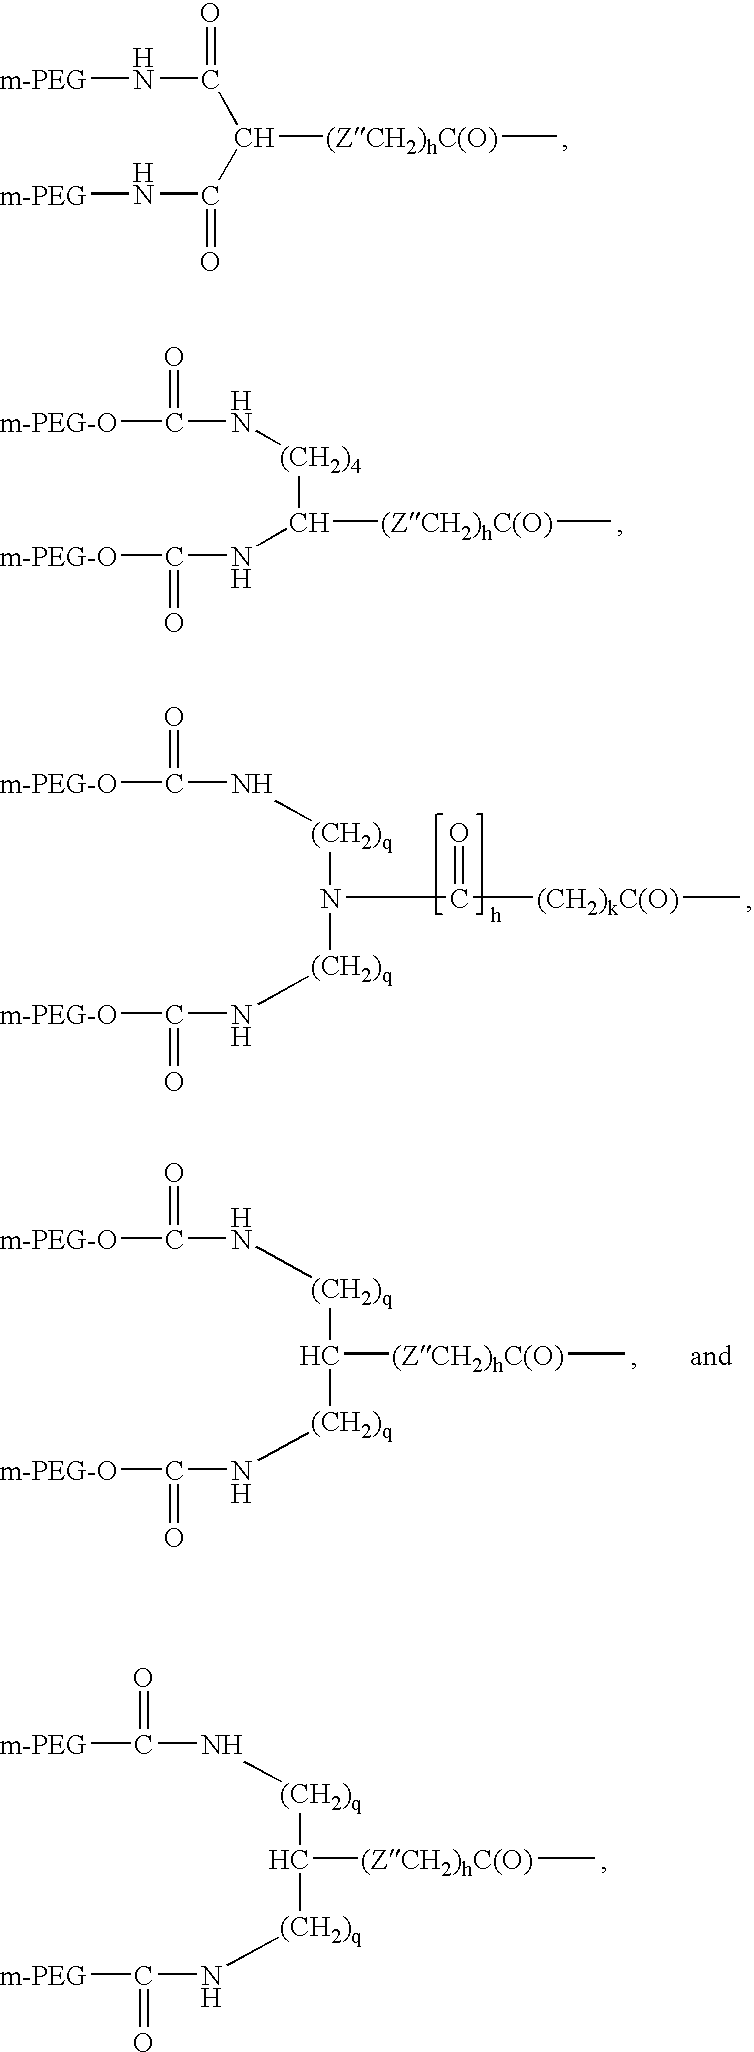 Methods of preparing polymers having terminal amine groups